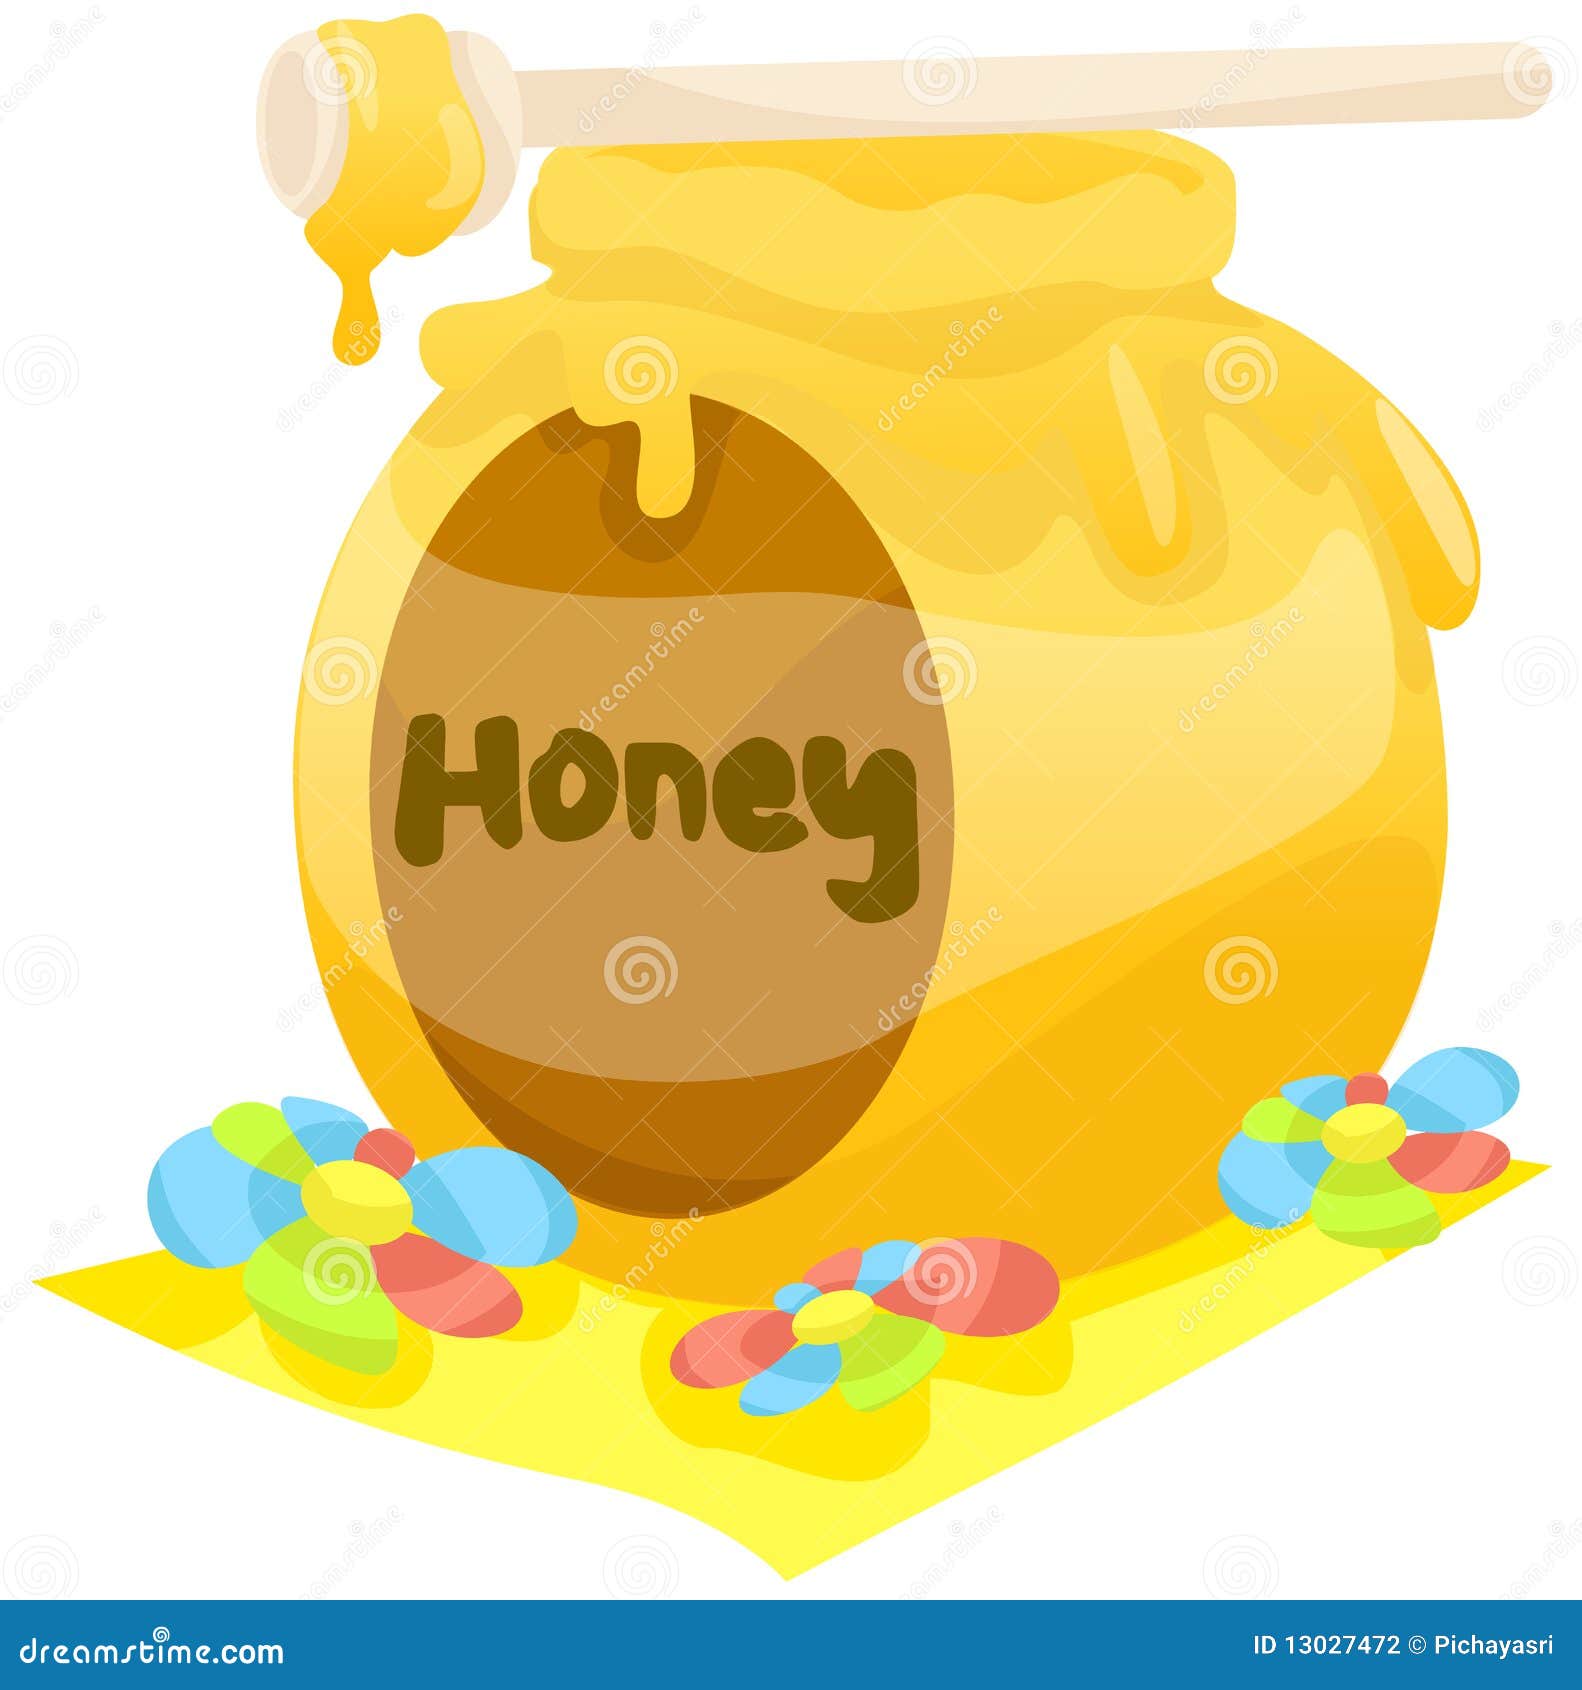 clipart honey - photo #50